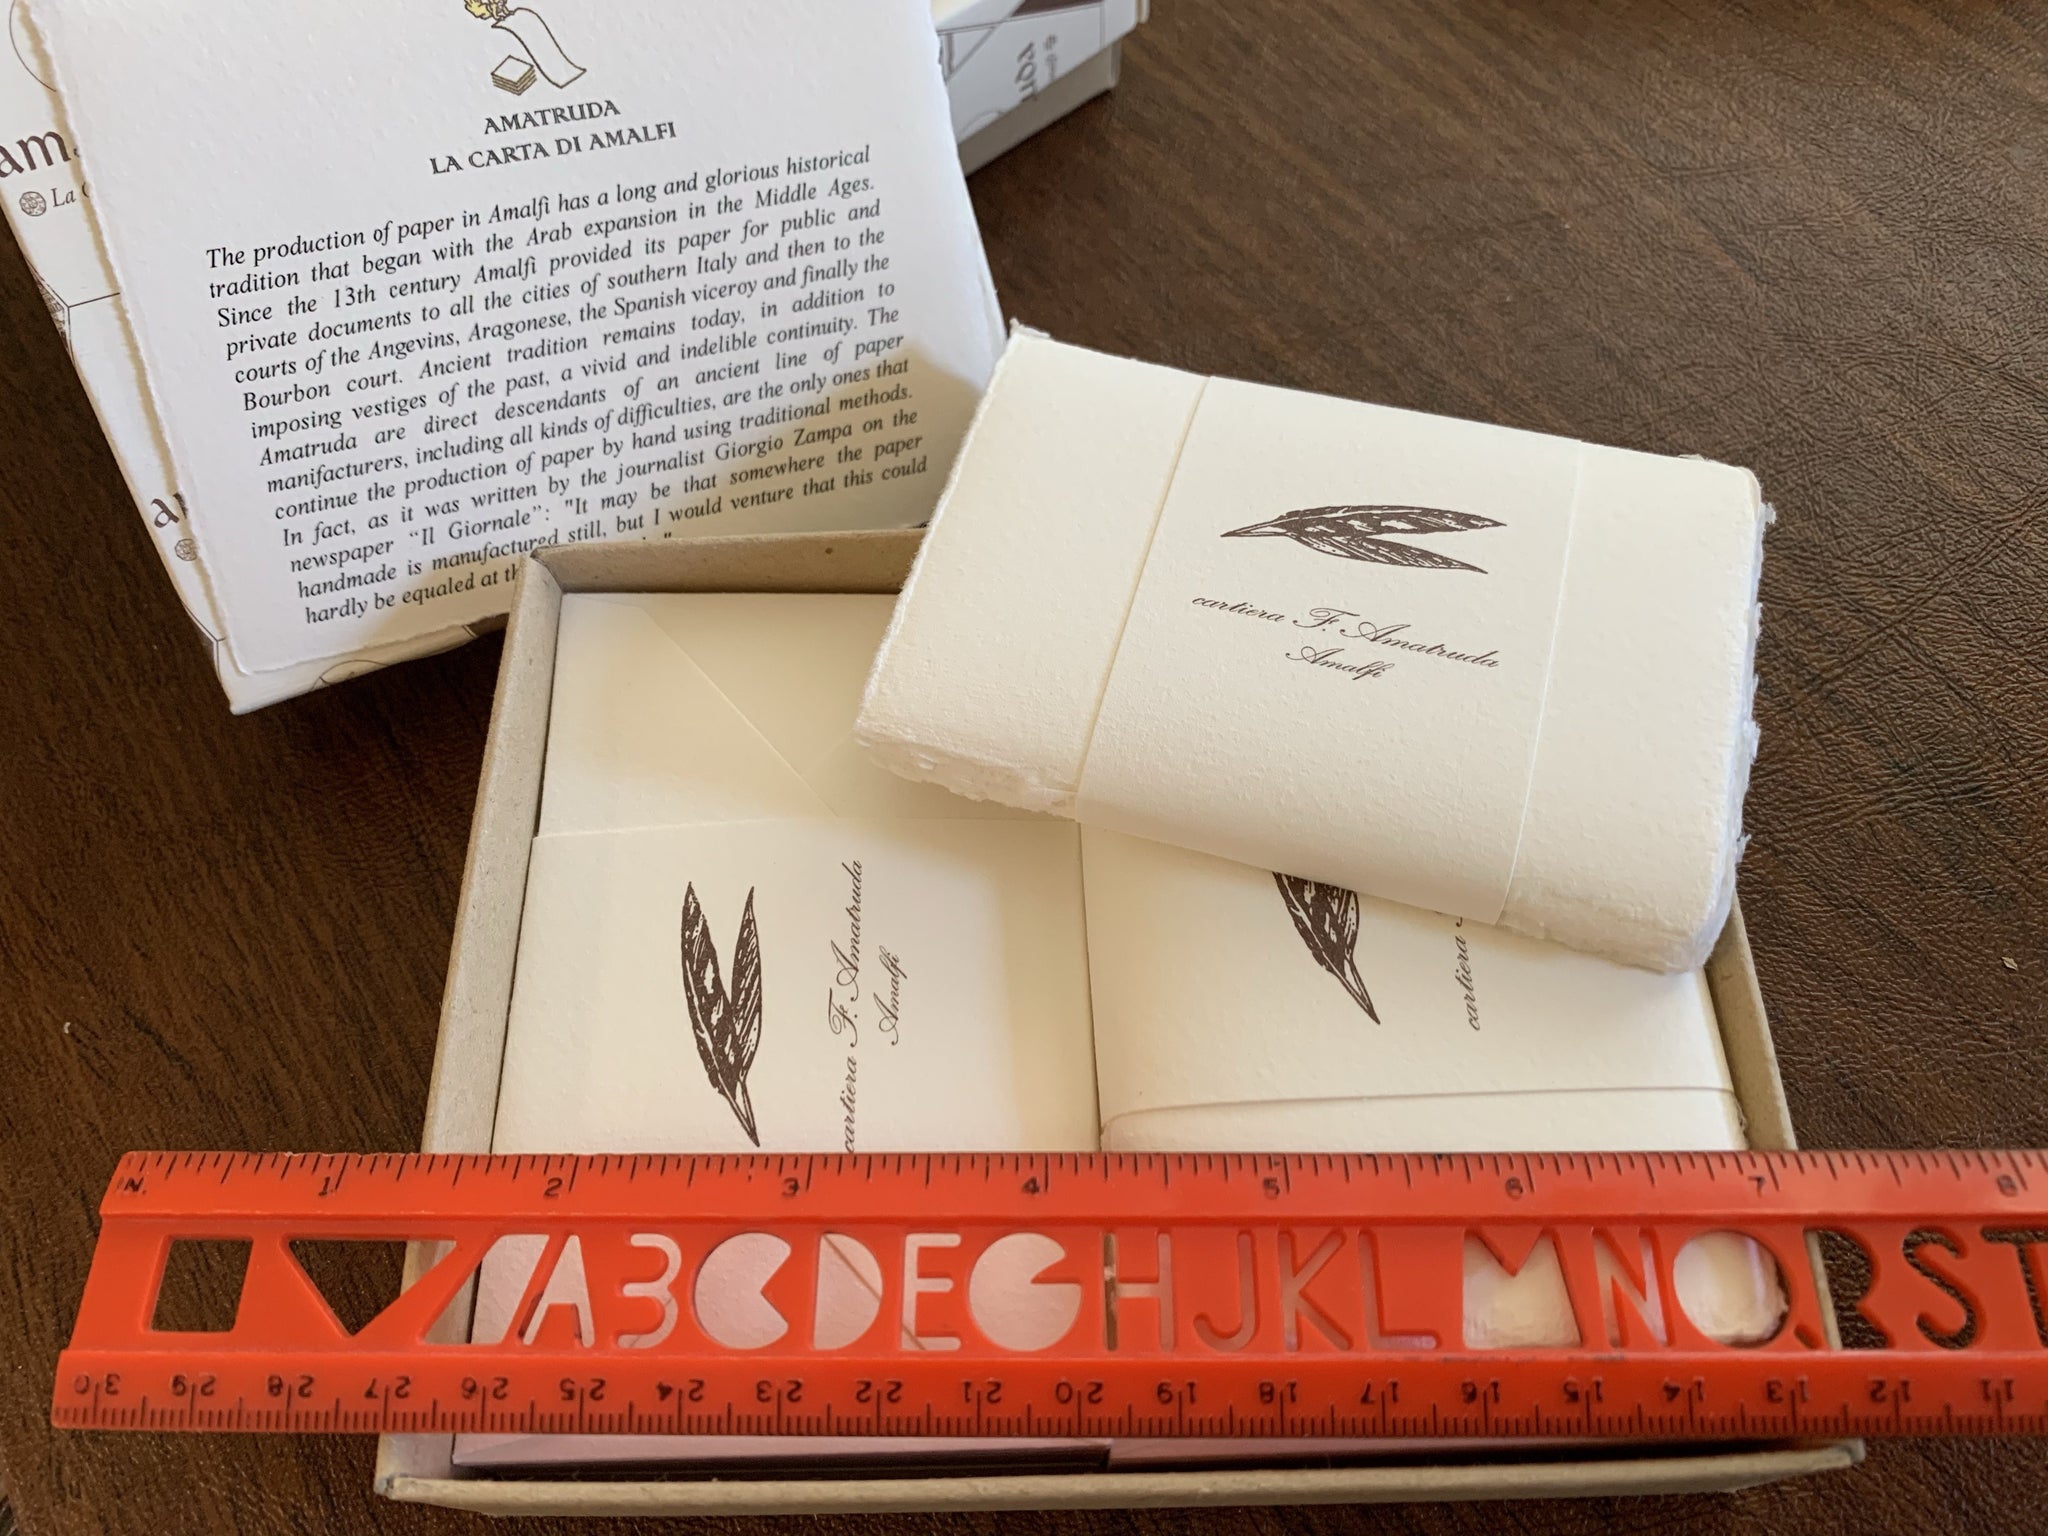 Amalfi Box of 50 Flat Single Cards/Envelopes 4 1/4" x 2 3/4" by Amatruda